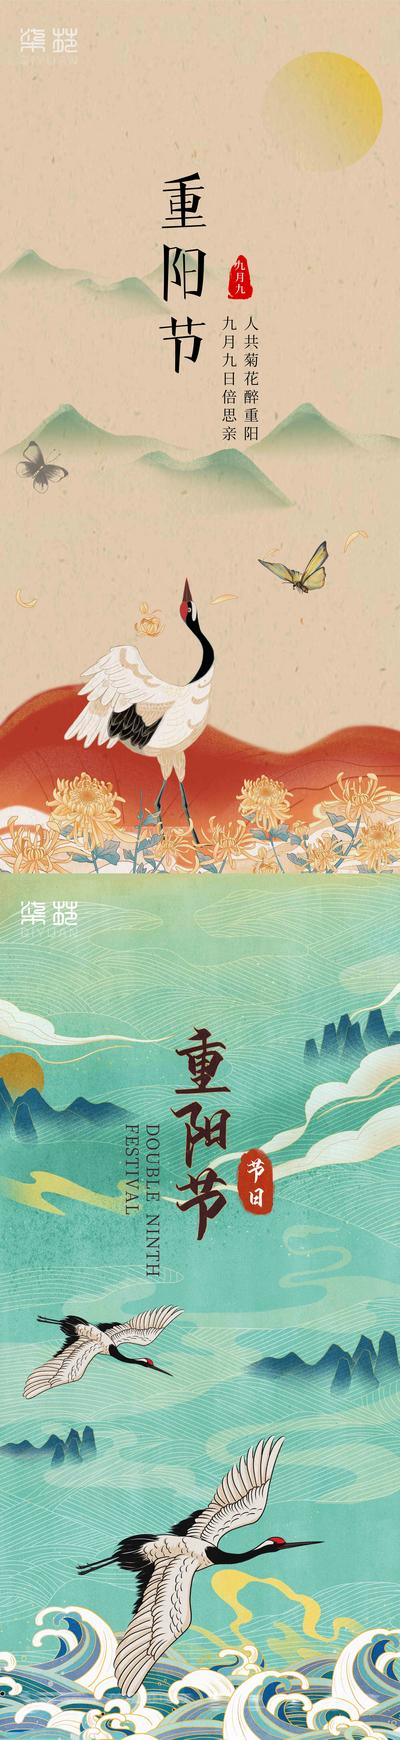 南门网 海报 房地产 中国传统节日 九九 重阳节 菊花 仙鹤 插画